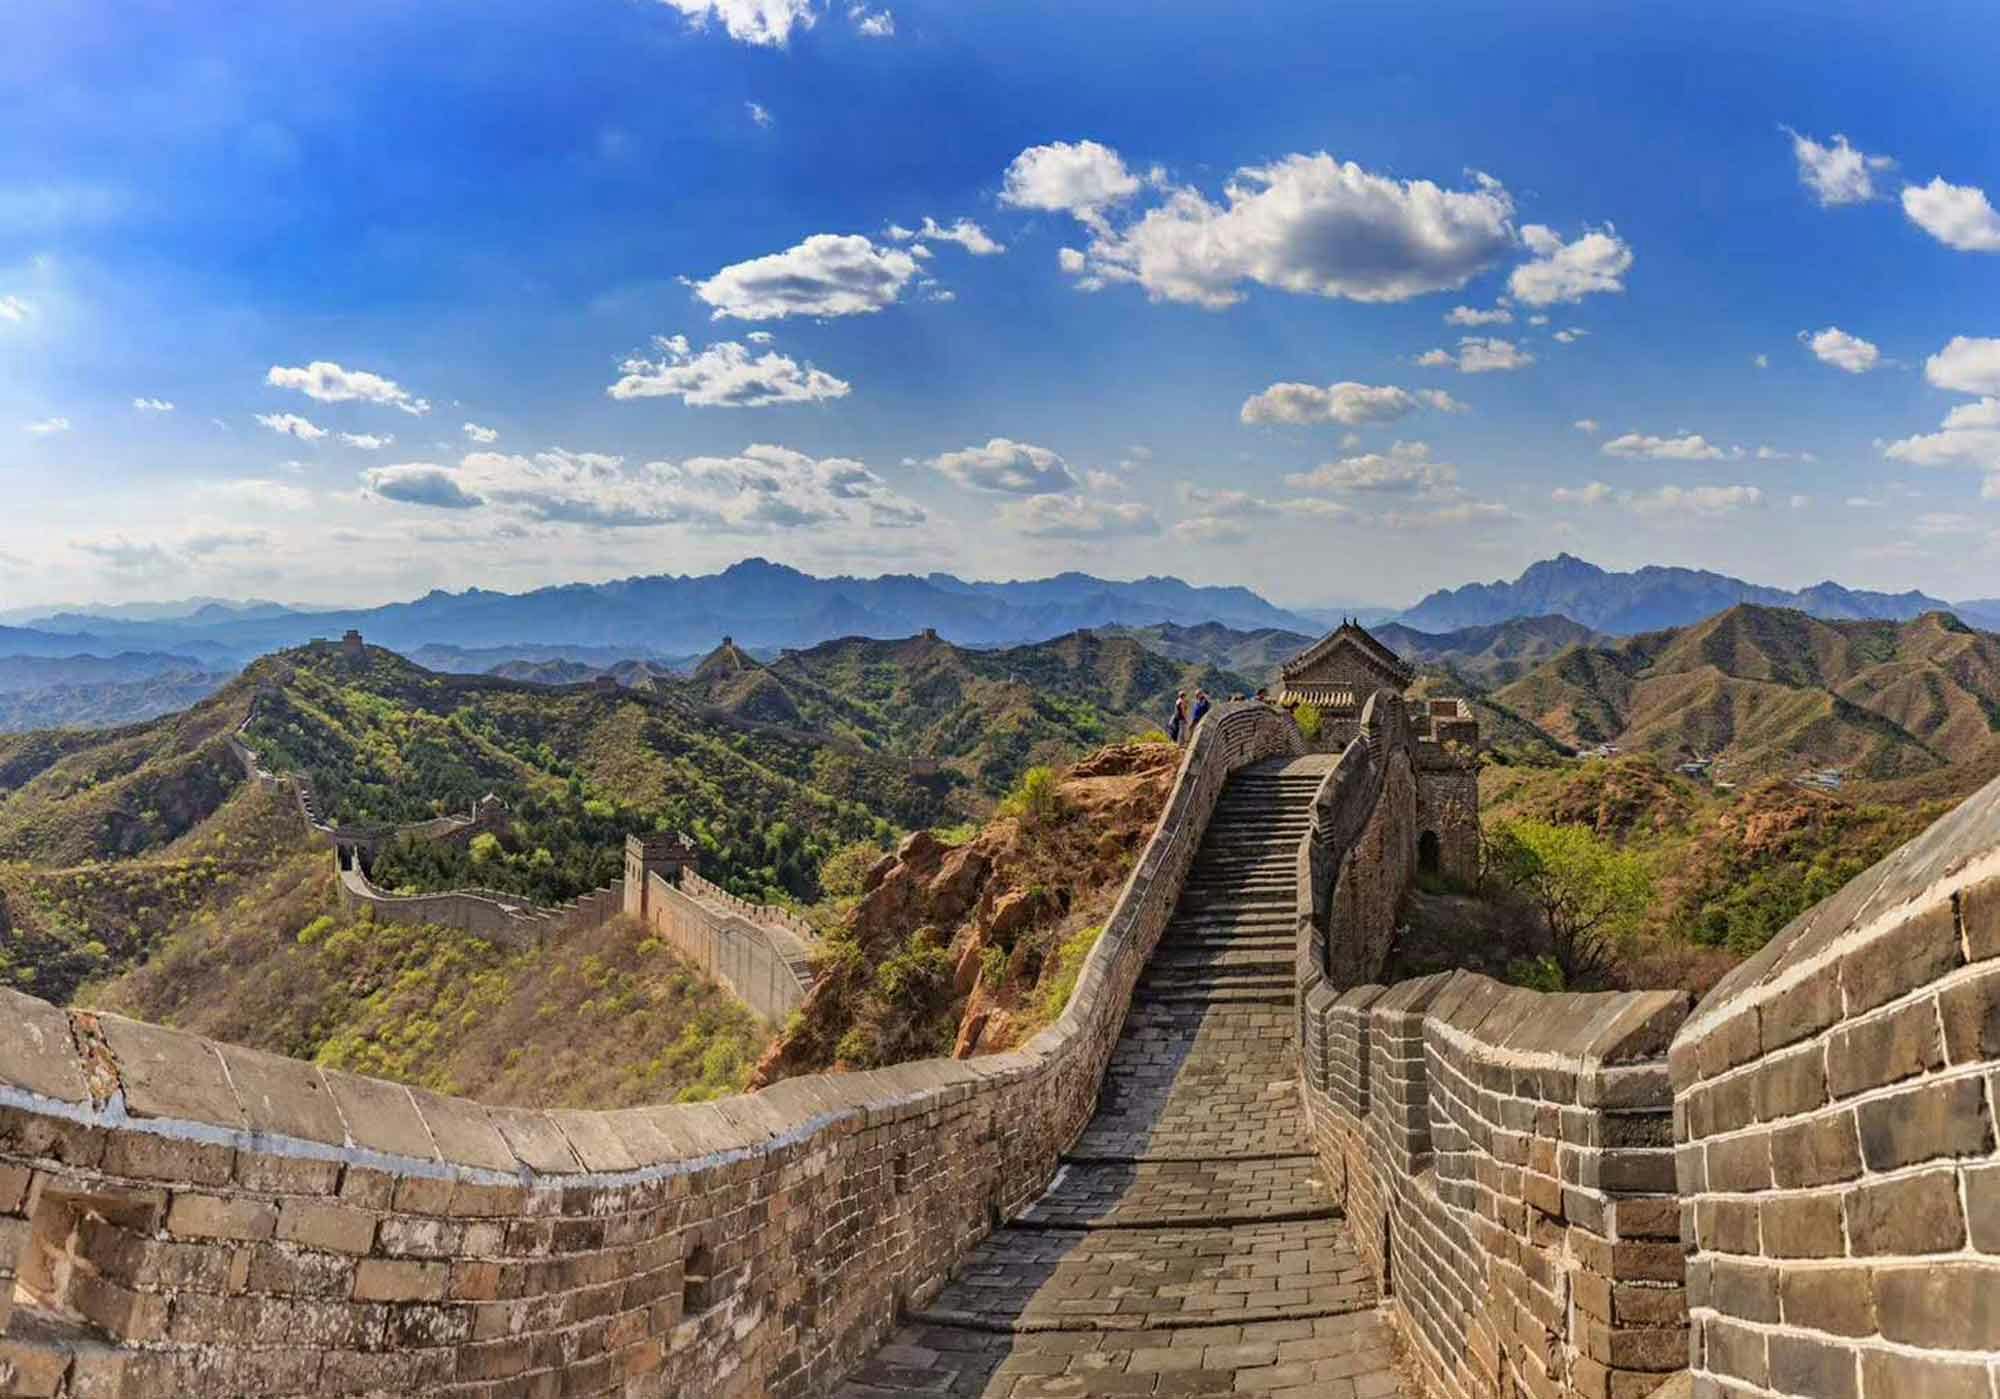 All-Inclusive-Highlights-Tour durch Peking zur Mutianyu-Chinesischen Mauer und zu anpassbaren Sehenswürdigkeiten